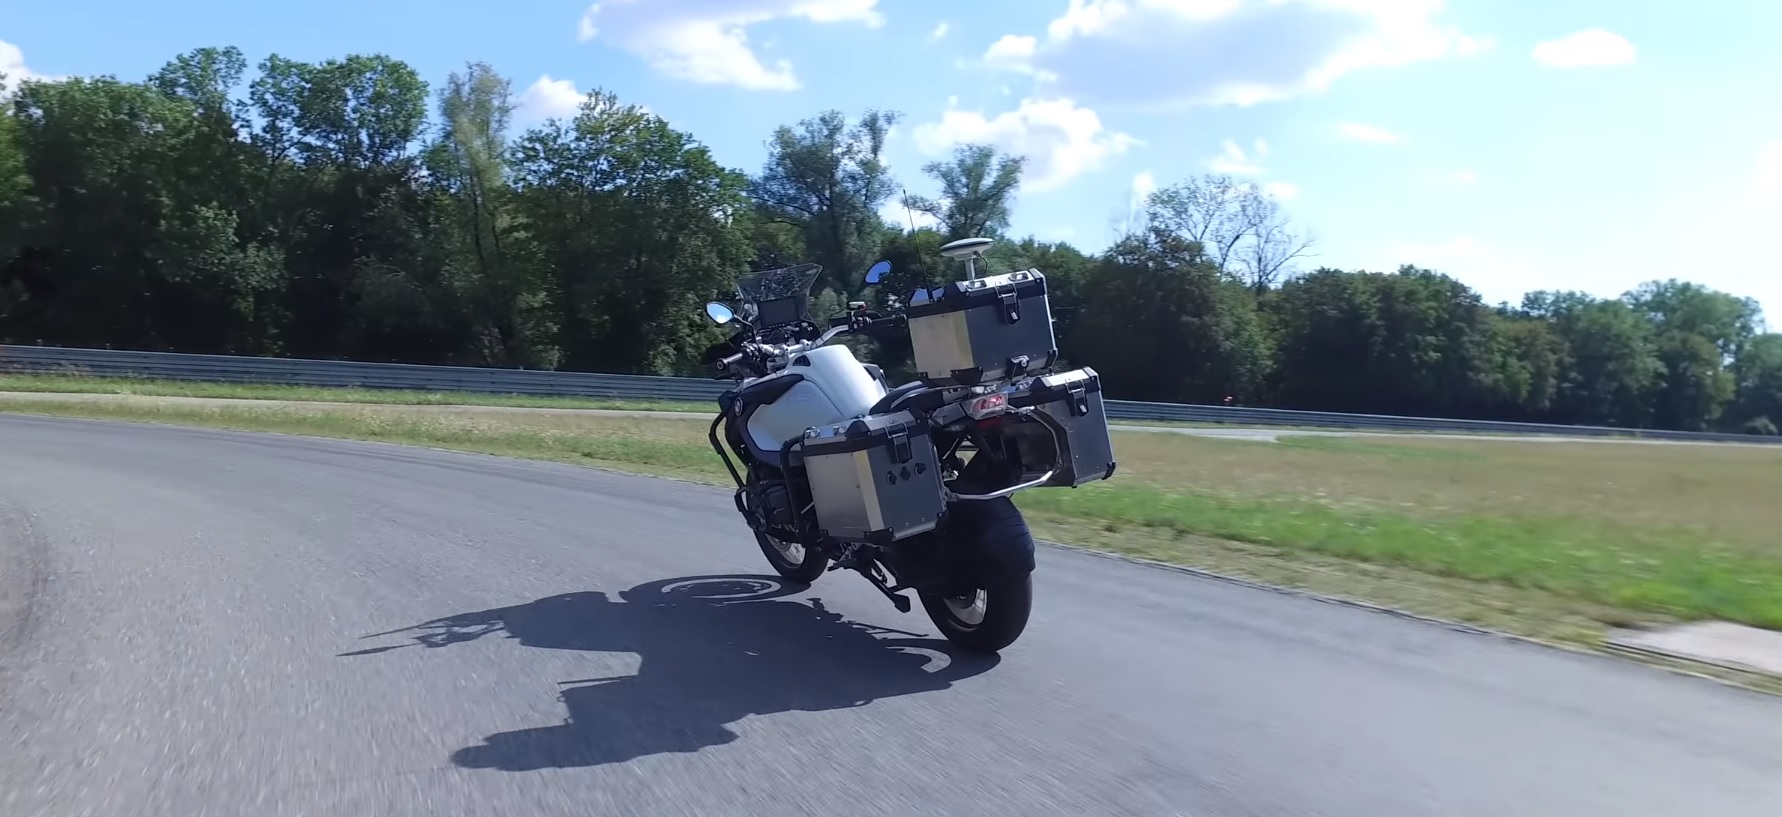 BMW har skabt en ubemandet motorcykel til at teste nye sikkerhedssystemer